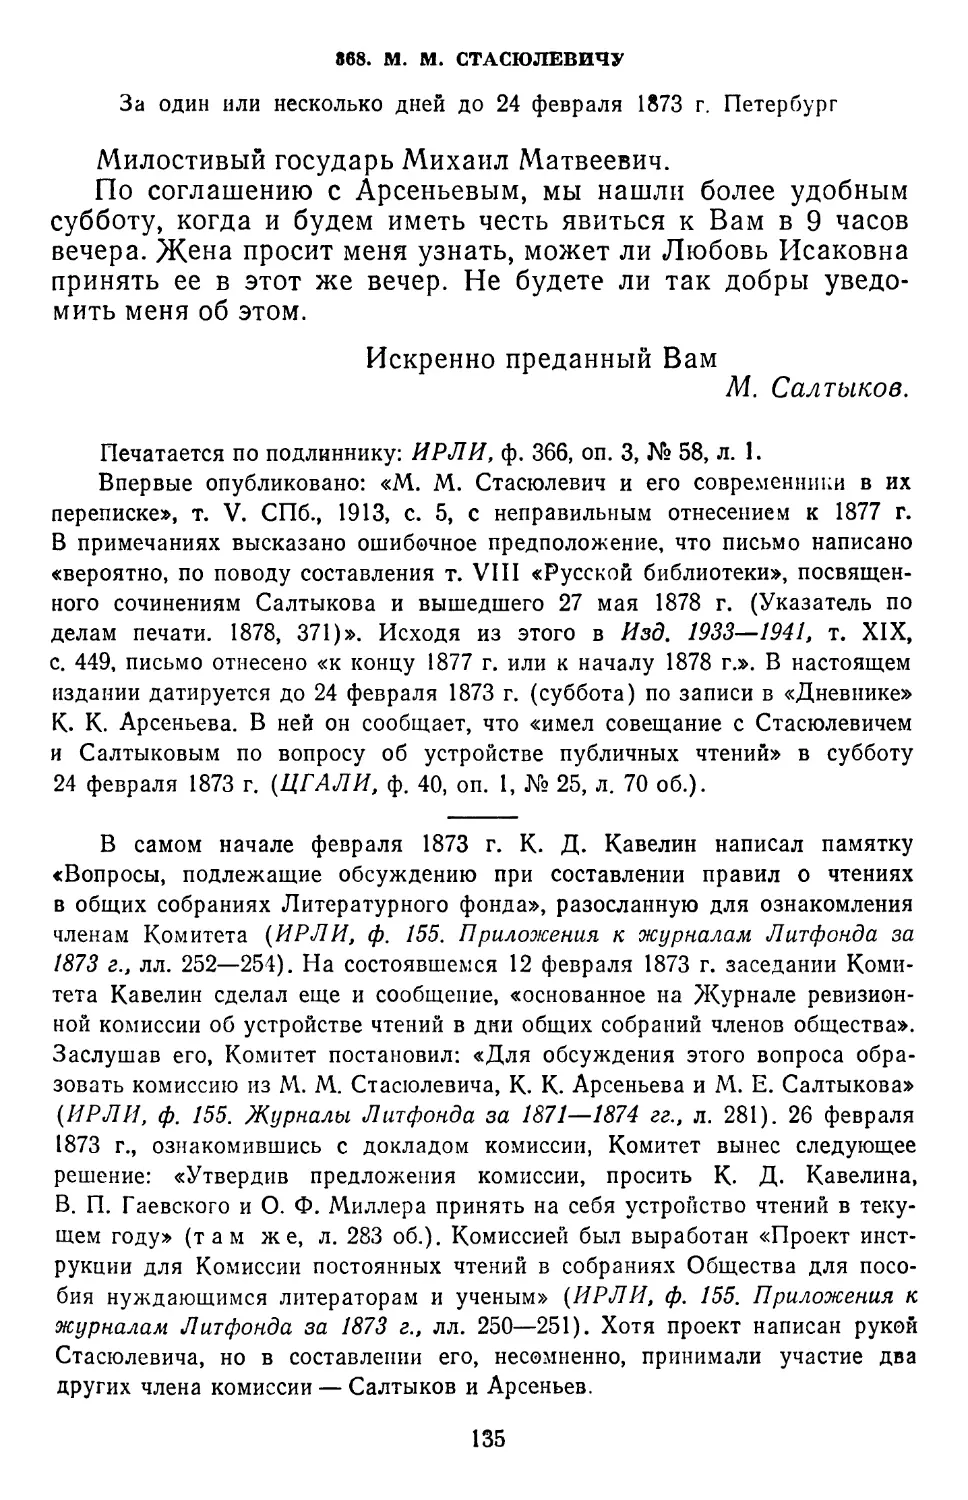 368.М. М. Стасюлевичу. За один или несколько дней до 24 февраля 1873. Петербург